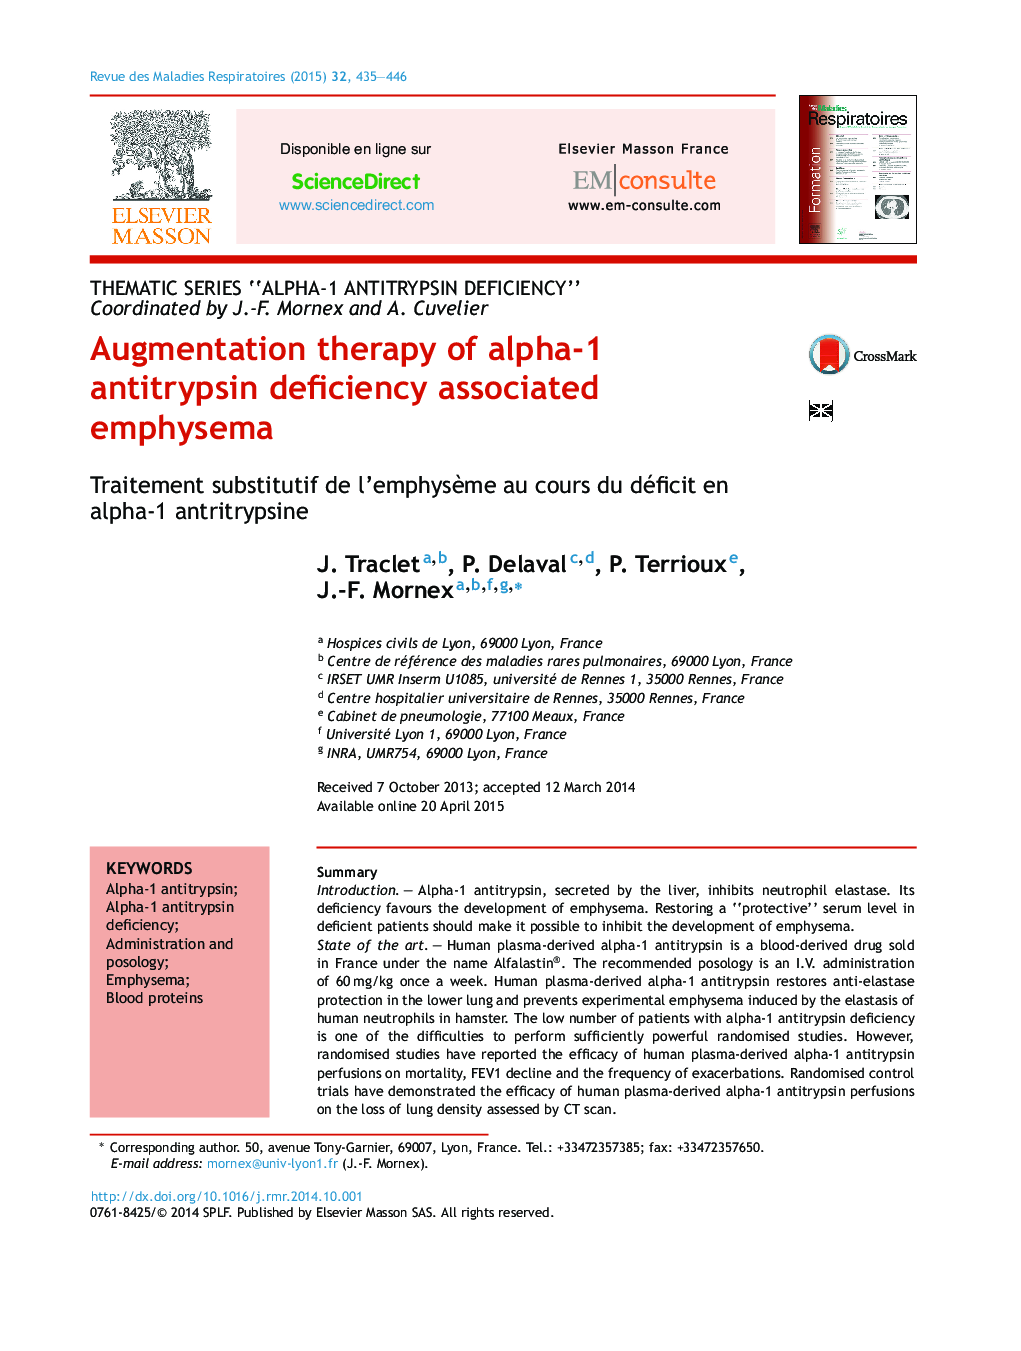 درمان تقویت آمفیزم مرتبط با کمبود آنتی تریپسین آلفا 1 